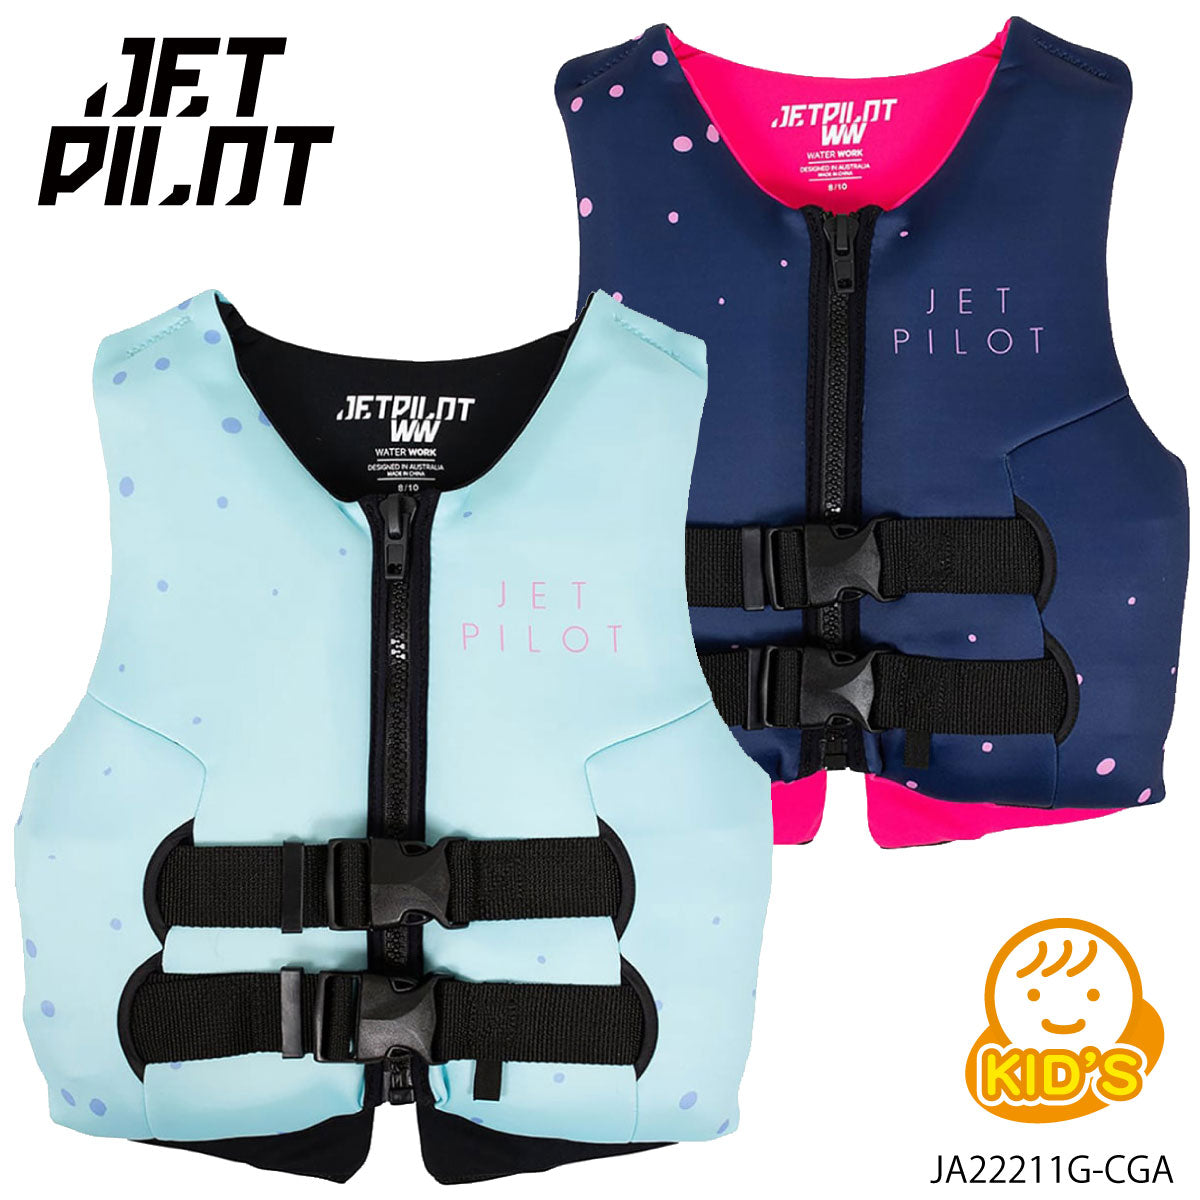 【JCIコーストガード認定品】JETPILOT ジェットパイロット ライフジャケット こども キッズ ライフベスト  プール 海水浴  JA22211G-CGA